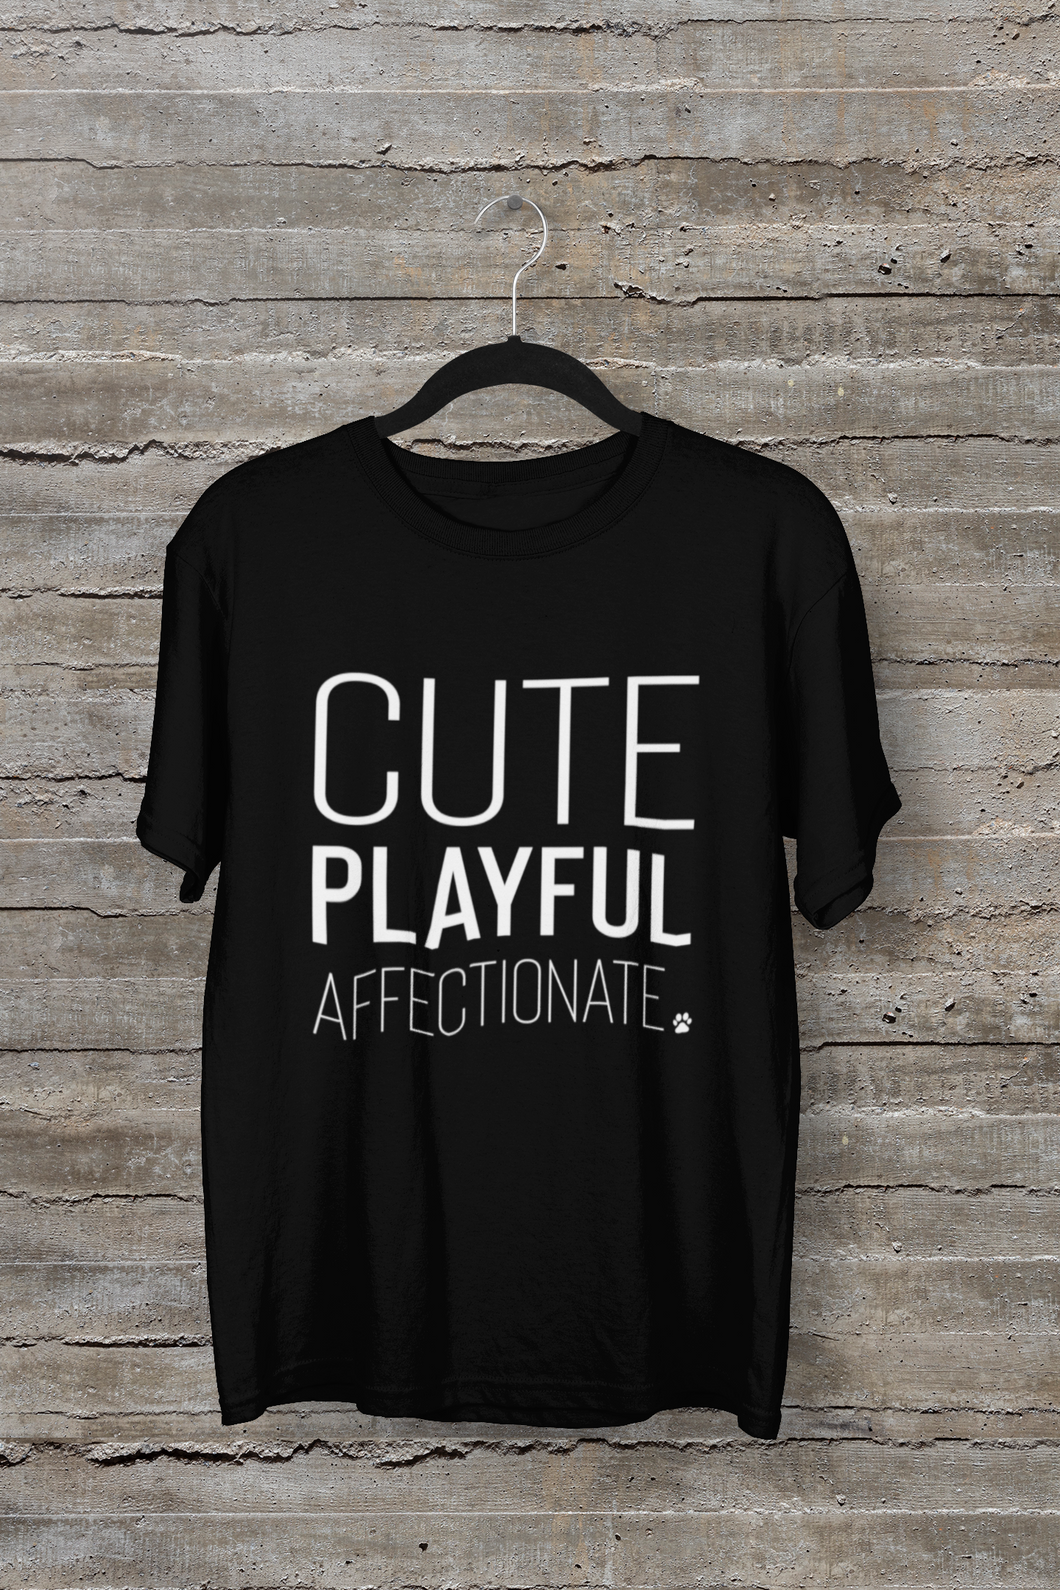 Cute Playful Affectionate Men's/Unisex or Women's T-shirt